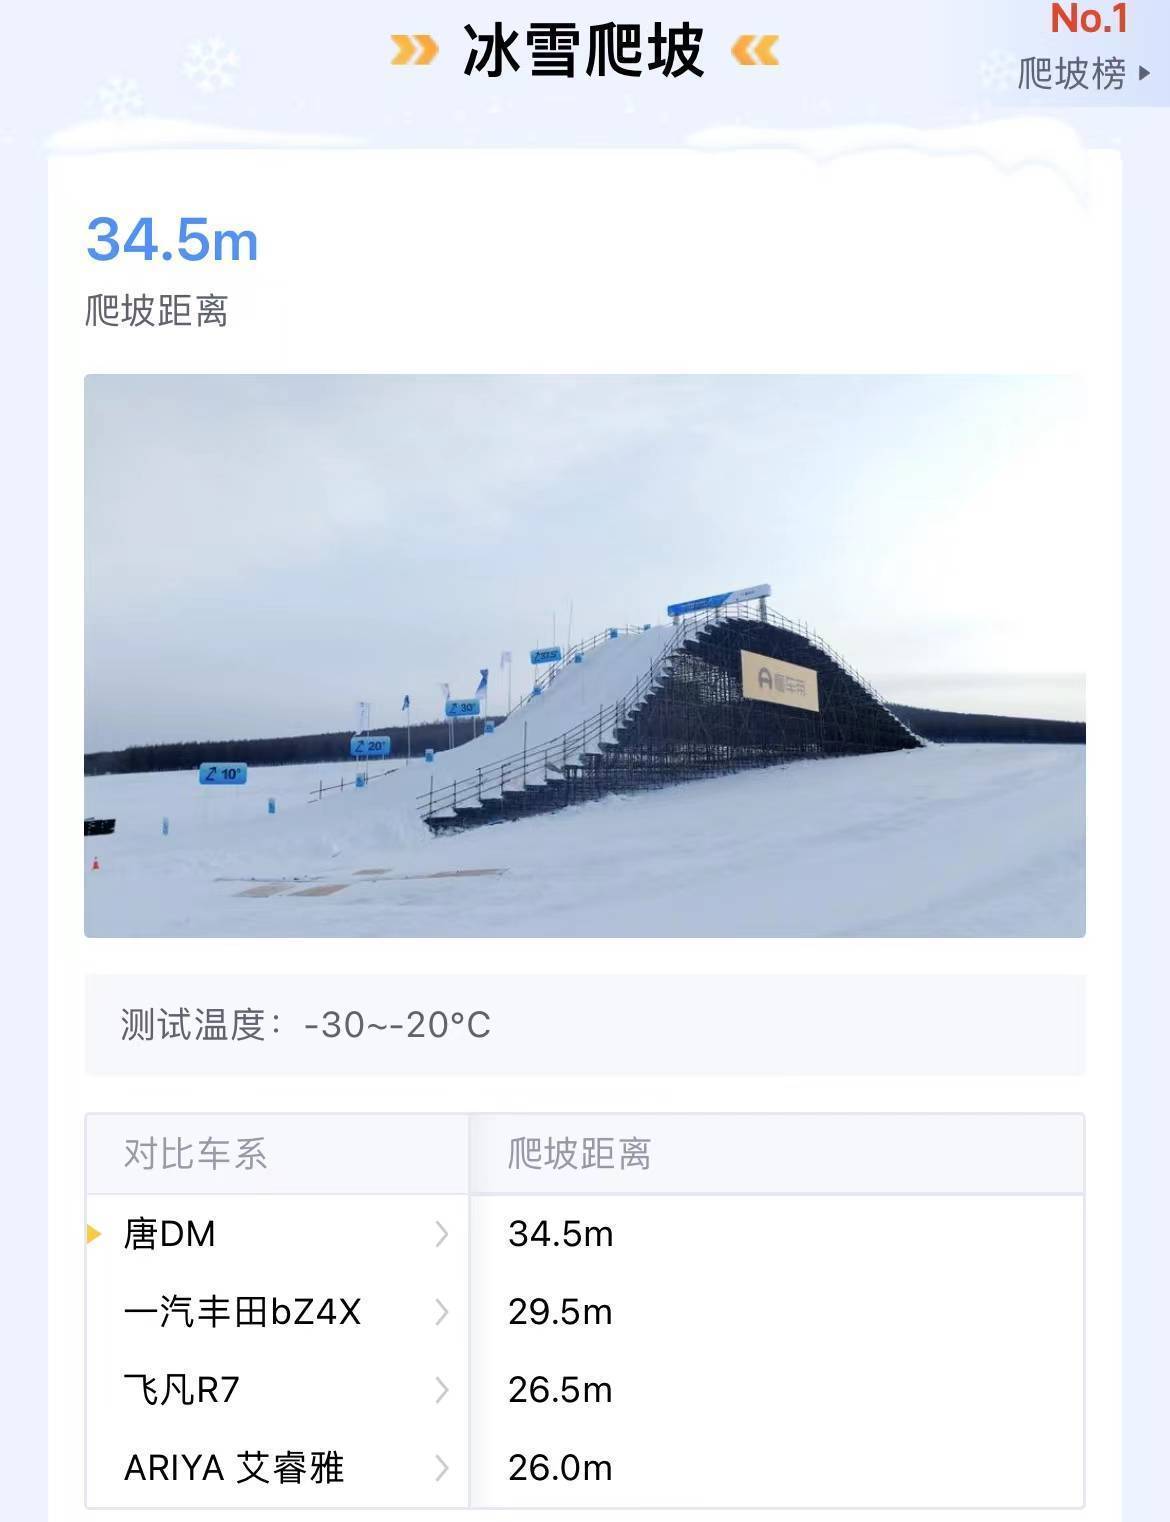 高手过招，王者混动唐DM-p冰雪冬测爬坡34.5m夺冠！